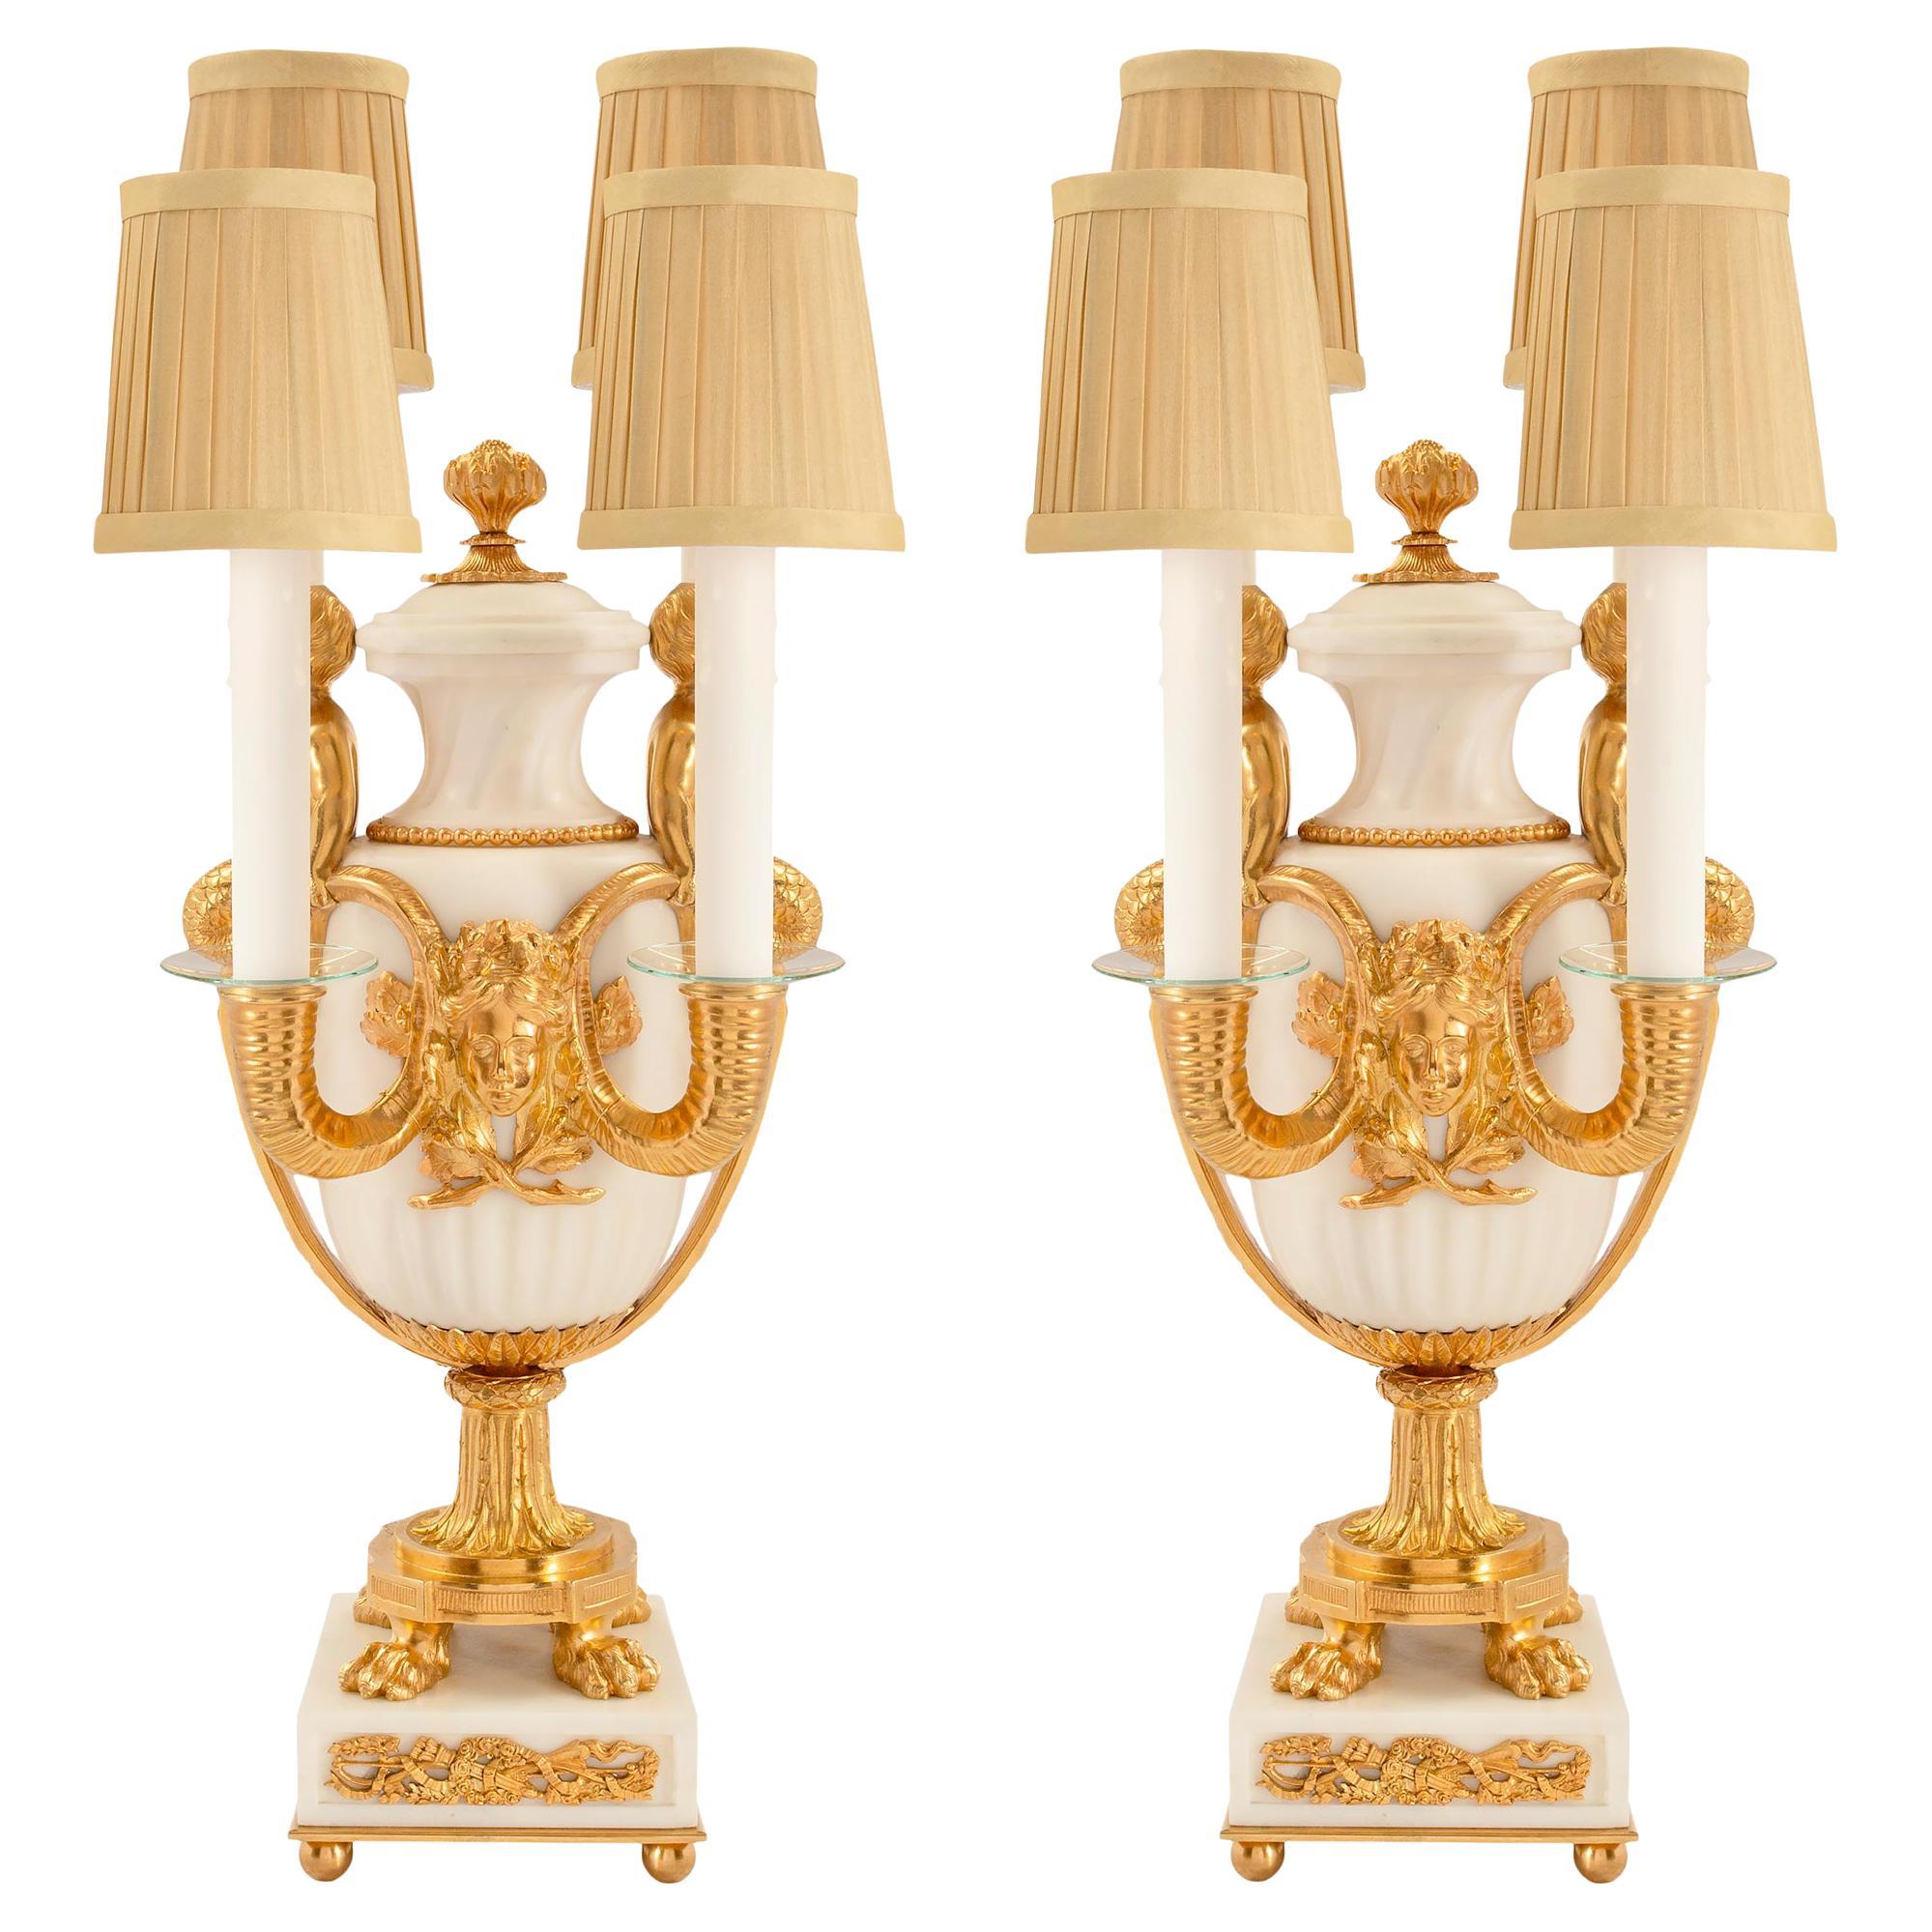 Paire de lampes françaises en marbre de style Louis XVI du 19ème siècle de la période Belle poque